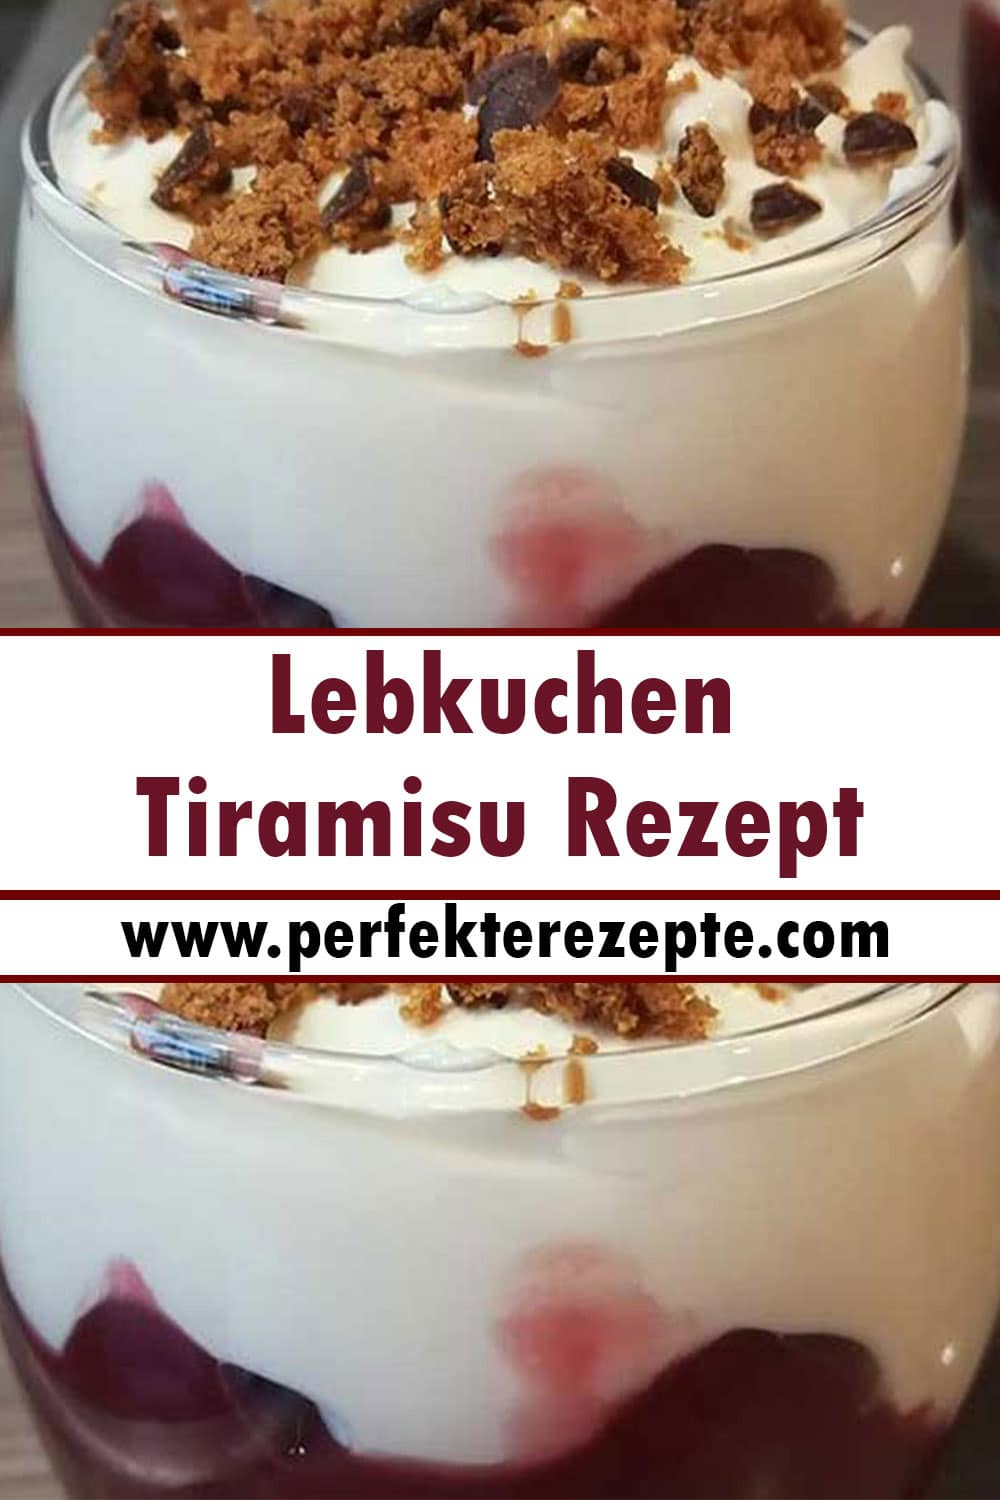 Lebkuchen Tiramisu Rezept